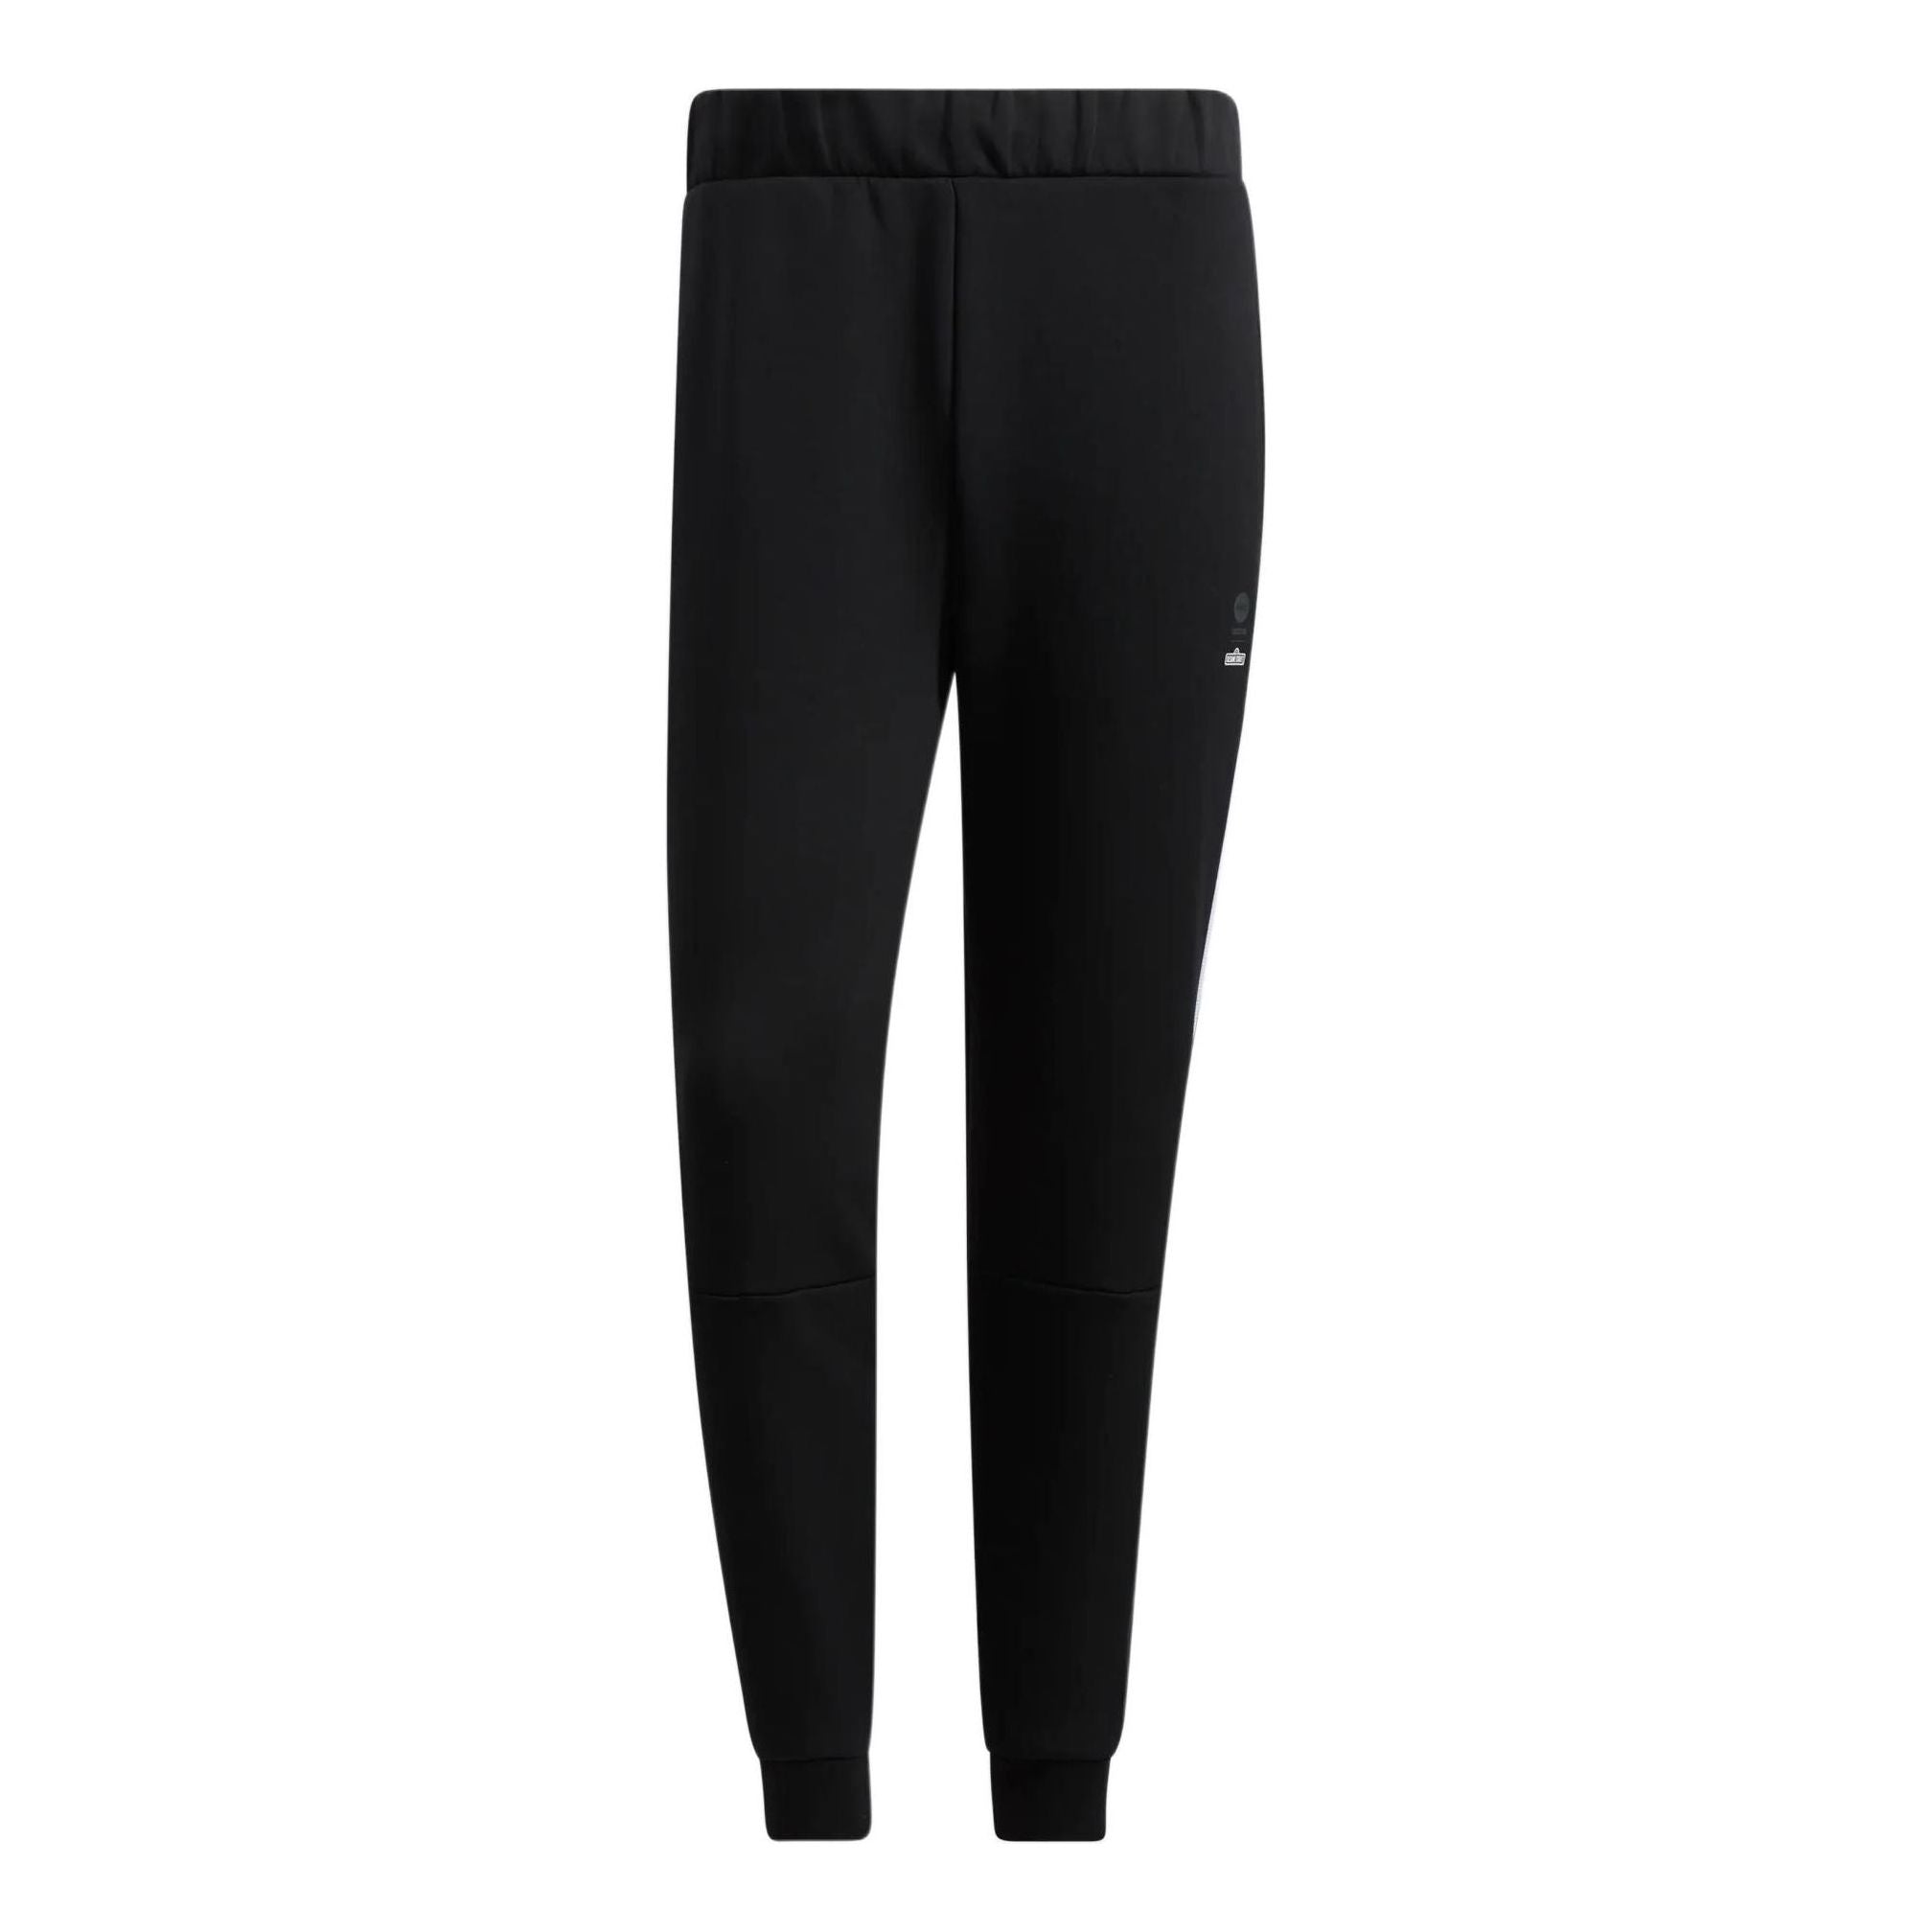 Adidas x Sesame Street Sports Pants 'Black' HD7291 - KICKS CREW